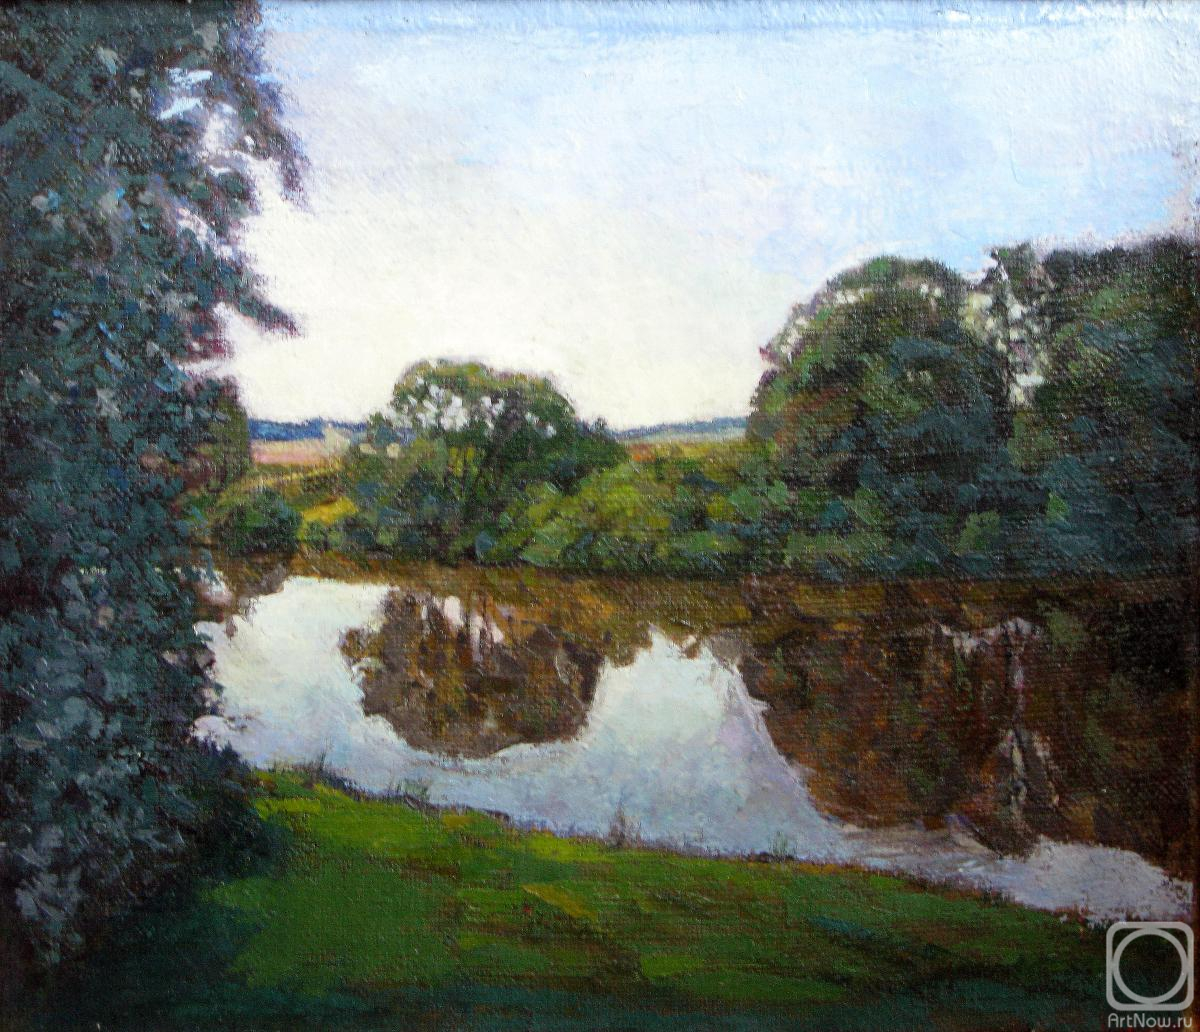 Ponomarev Vladimir. River Protva